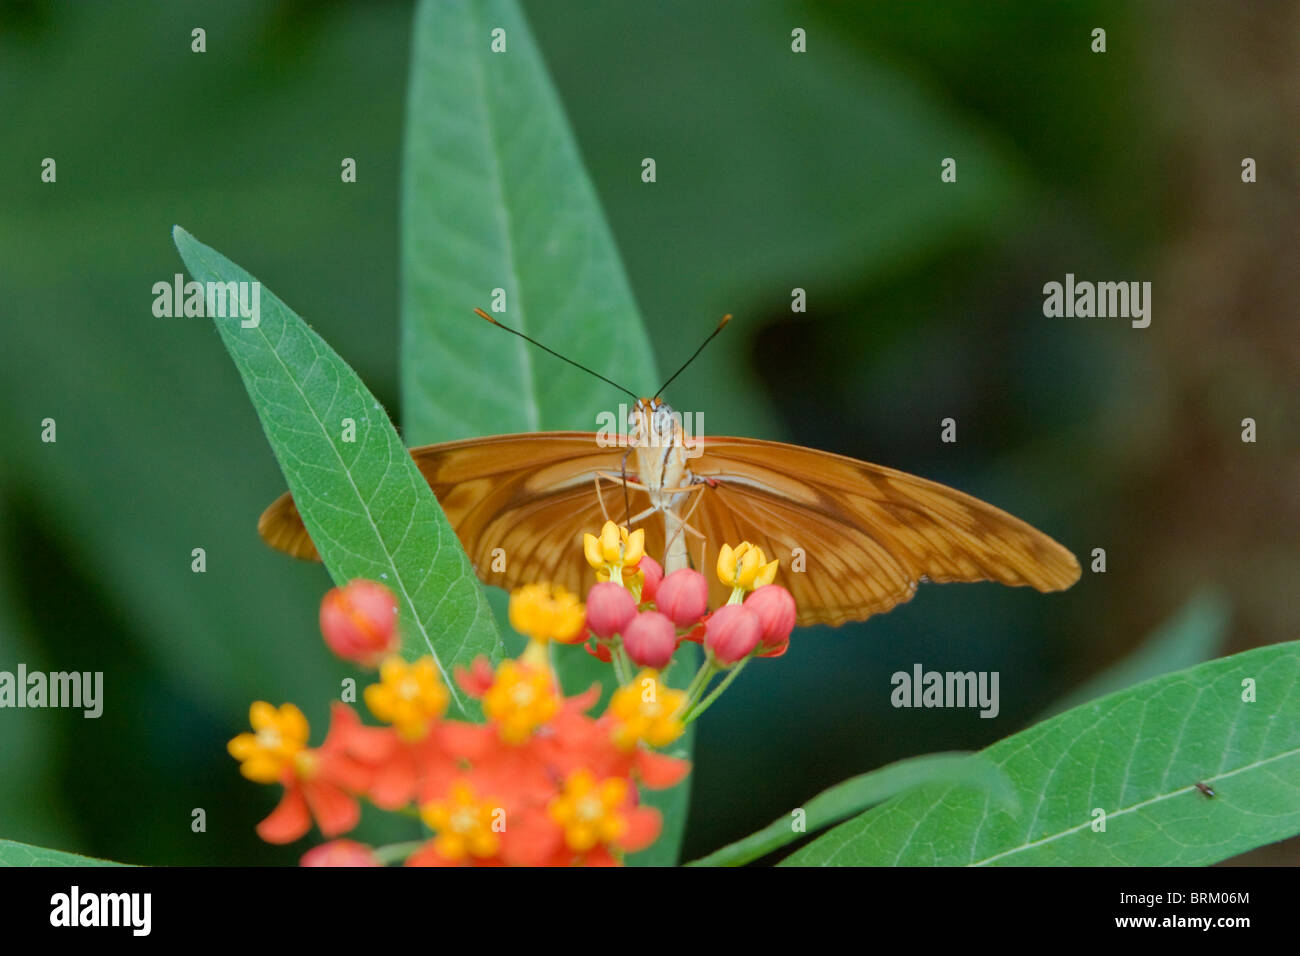 Mariposa no identificado, encaramado en una planta con flores Foto de stock